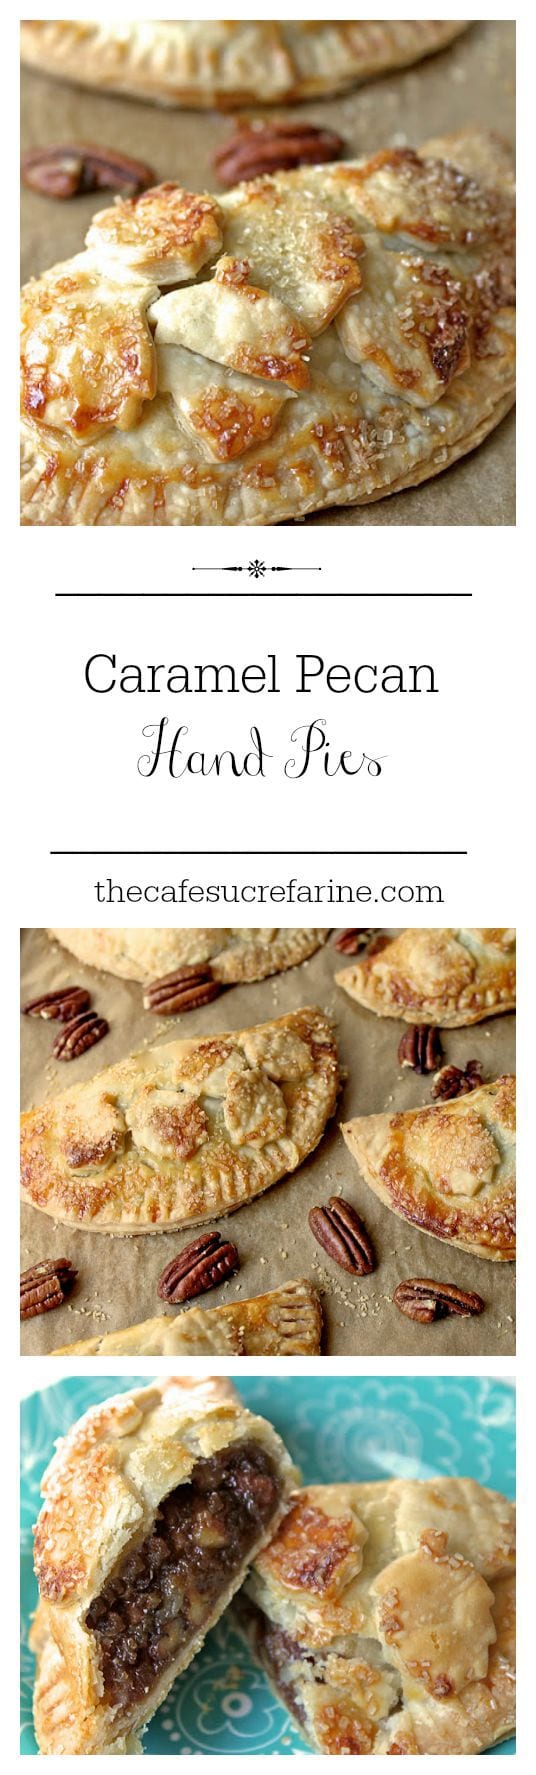 Caramel Pecan Hand Pies - 